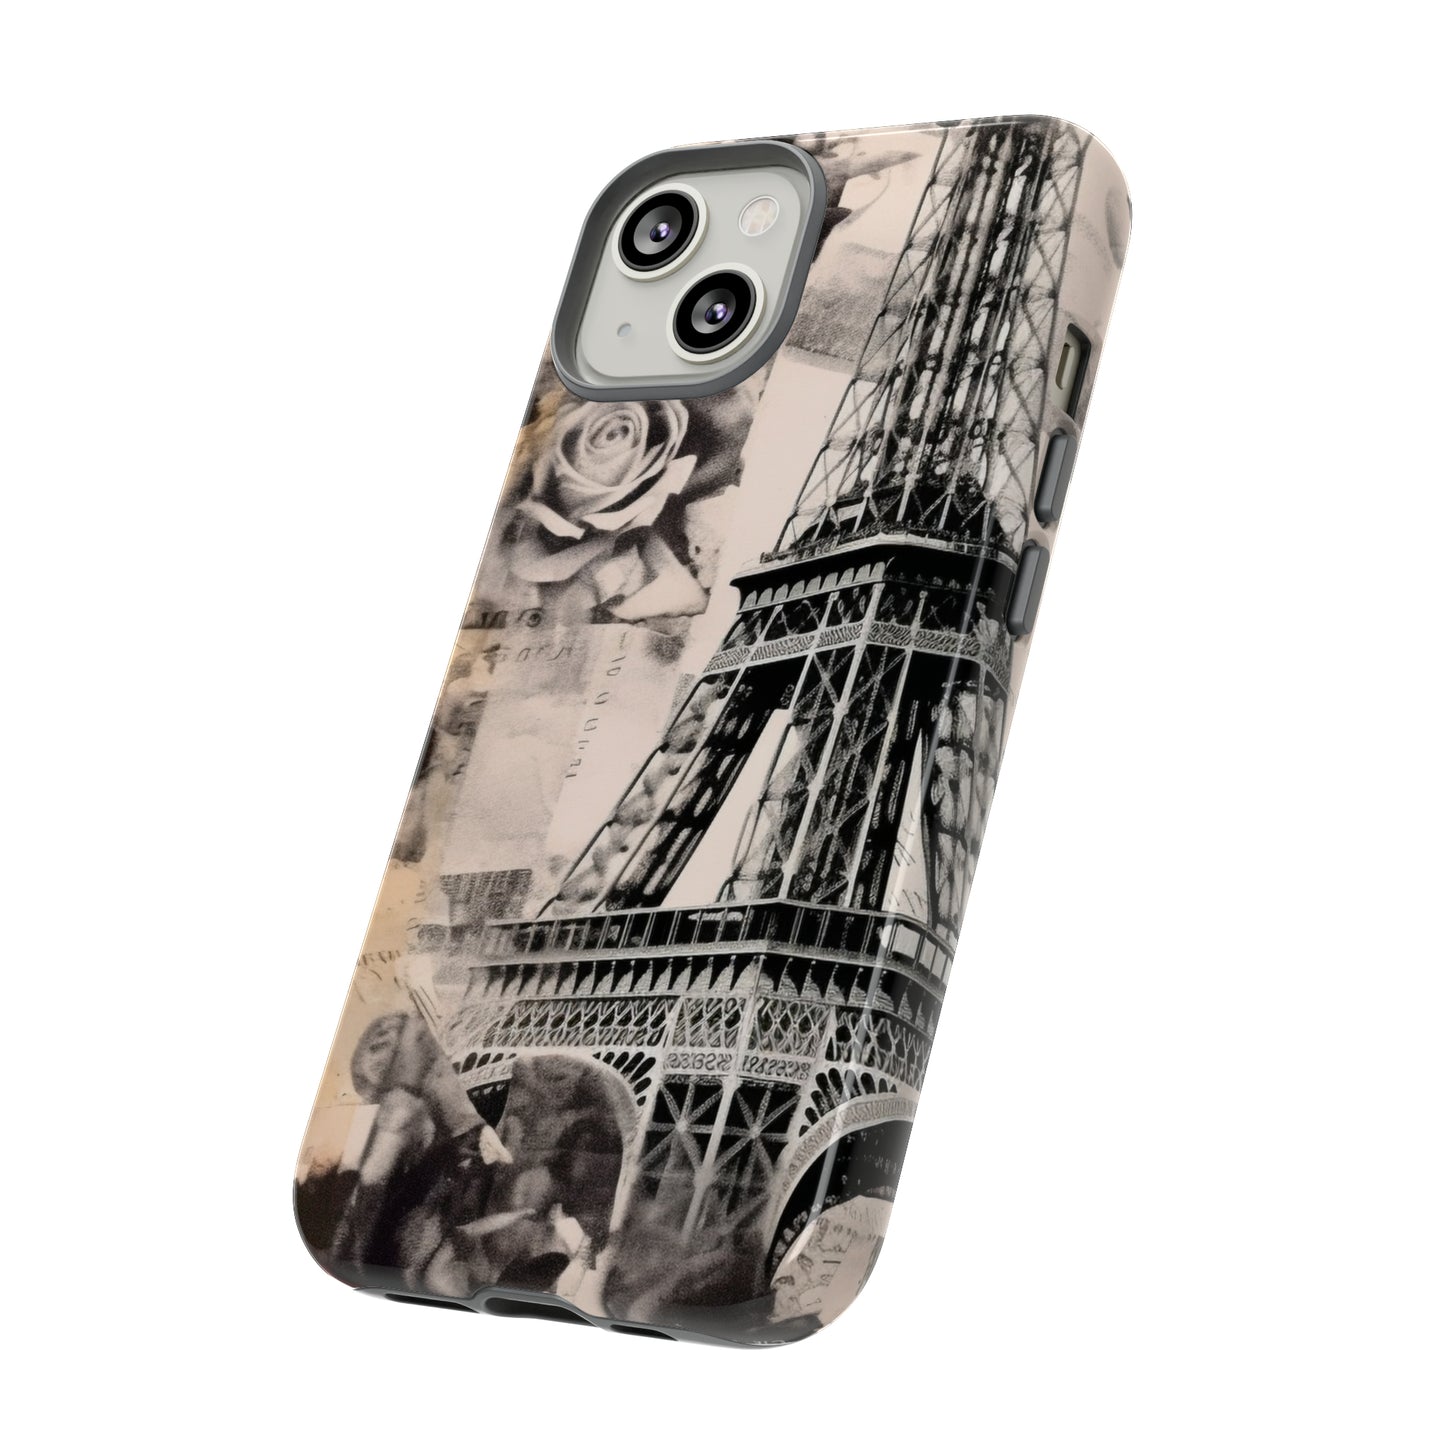 ALLEZ LET'S GO TO PARIS French Kiss Fashion Iphone Tough Cases